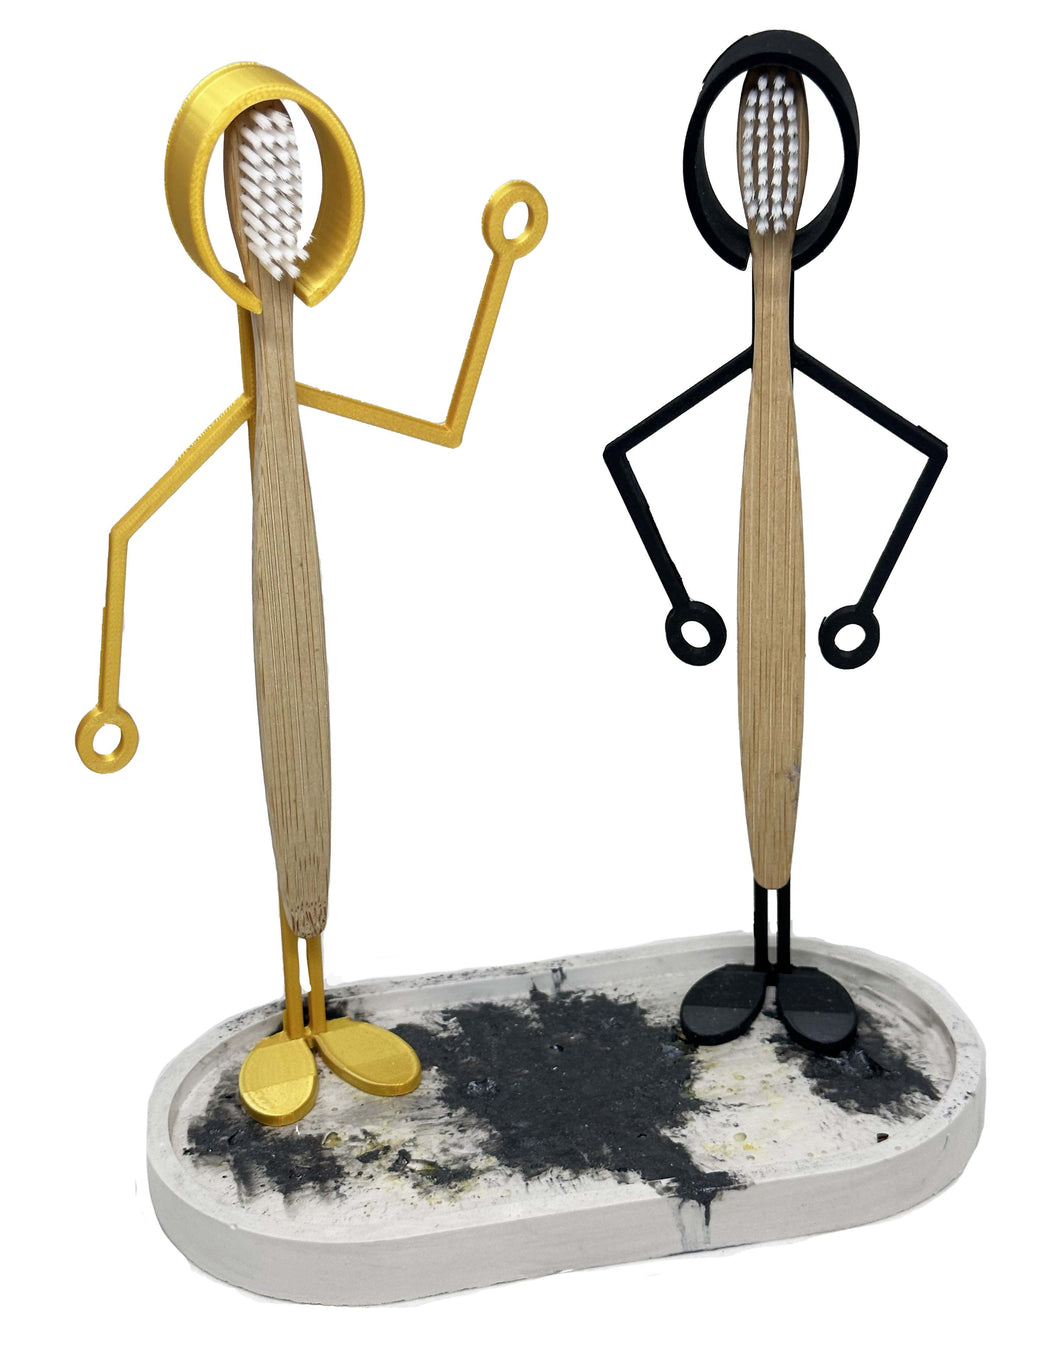 Support pour brosse à dents doré et noir avec support en pierre reconstituée et coupelle porte savon.